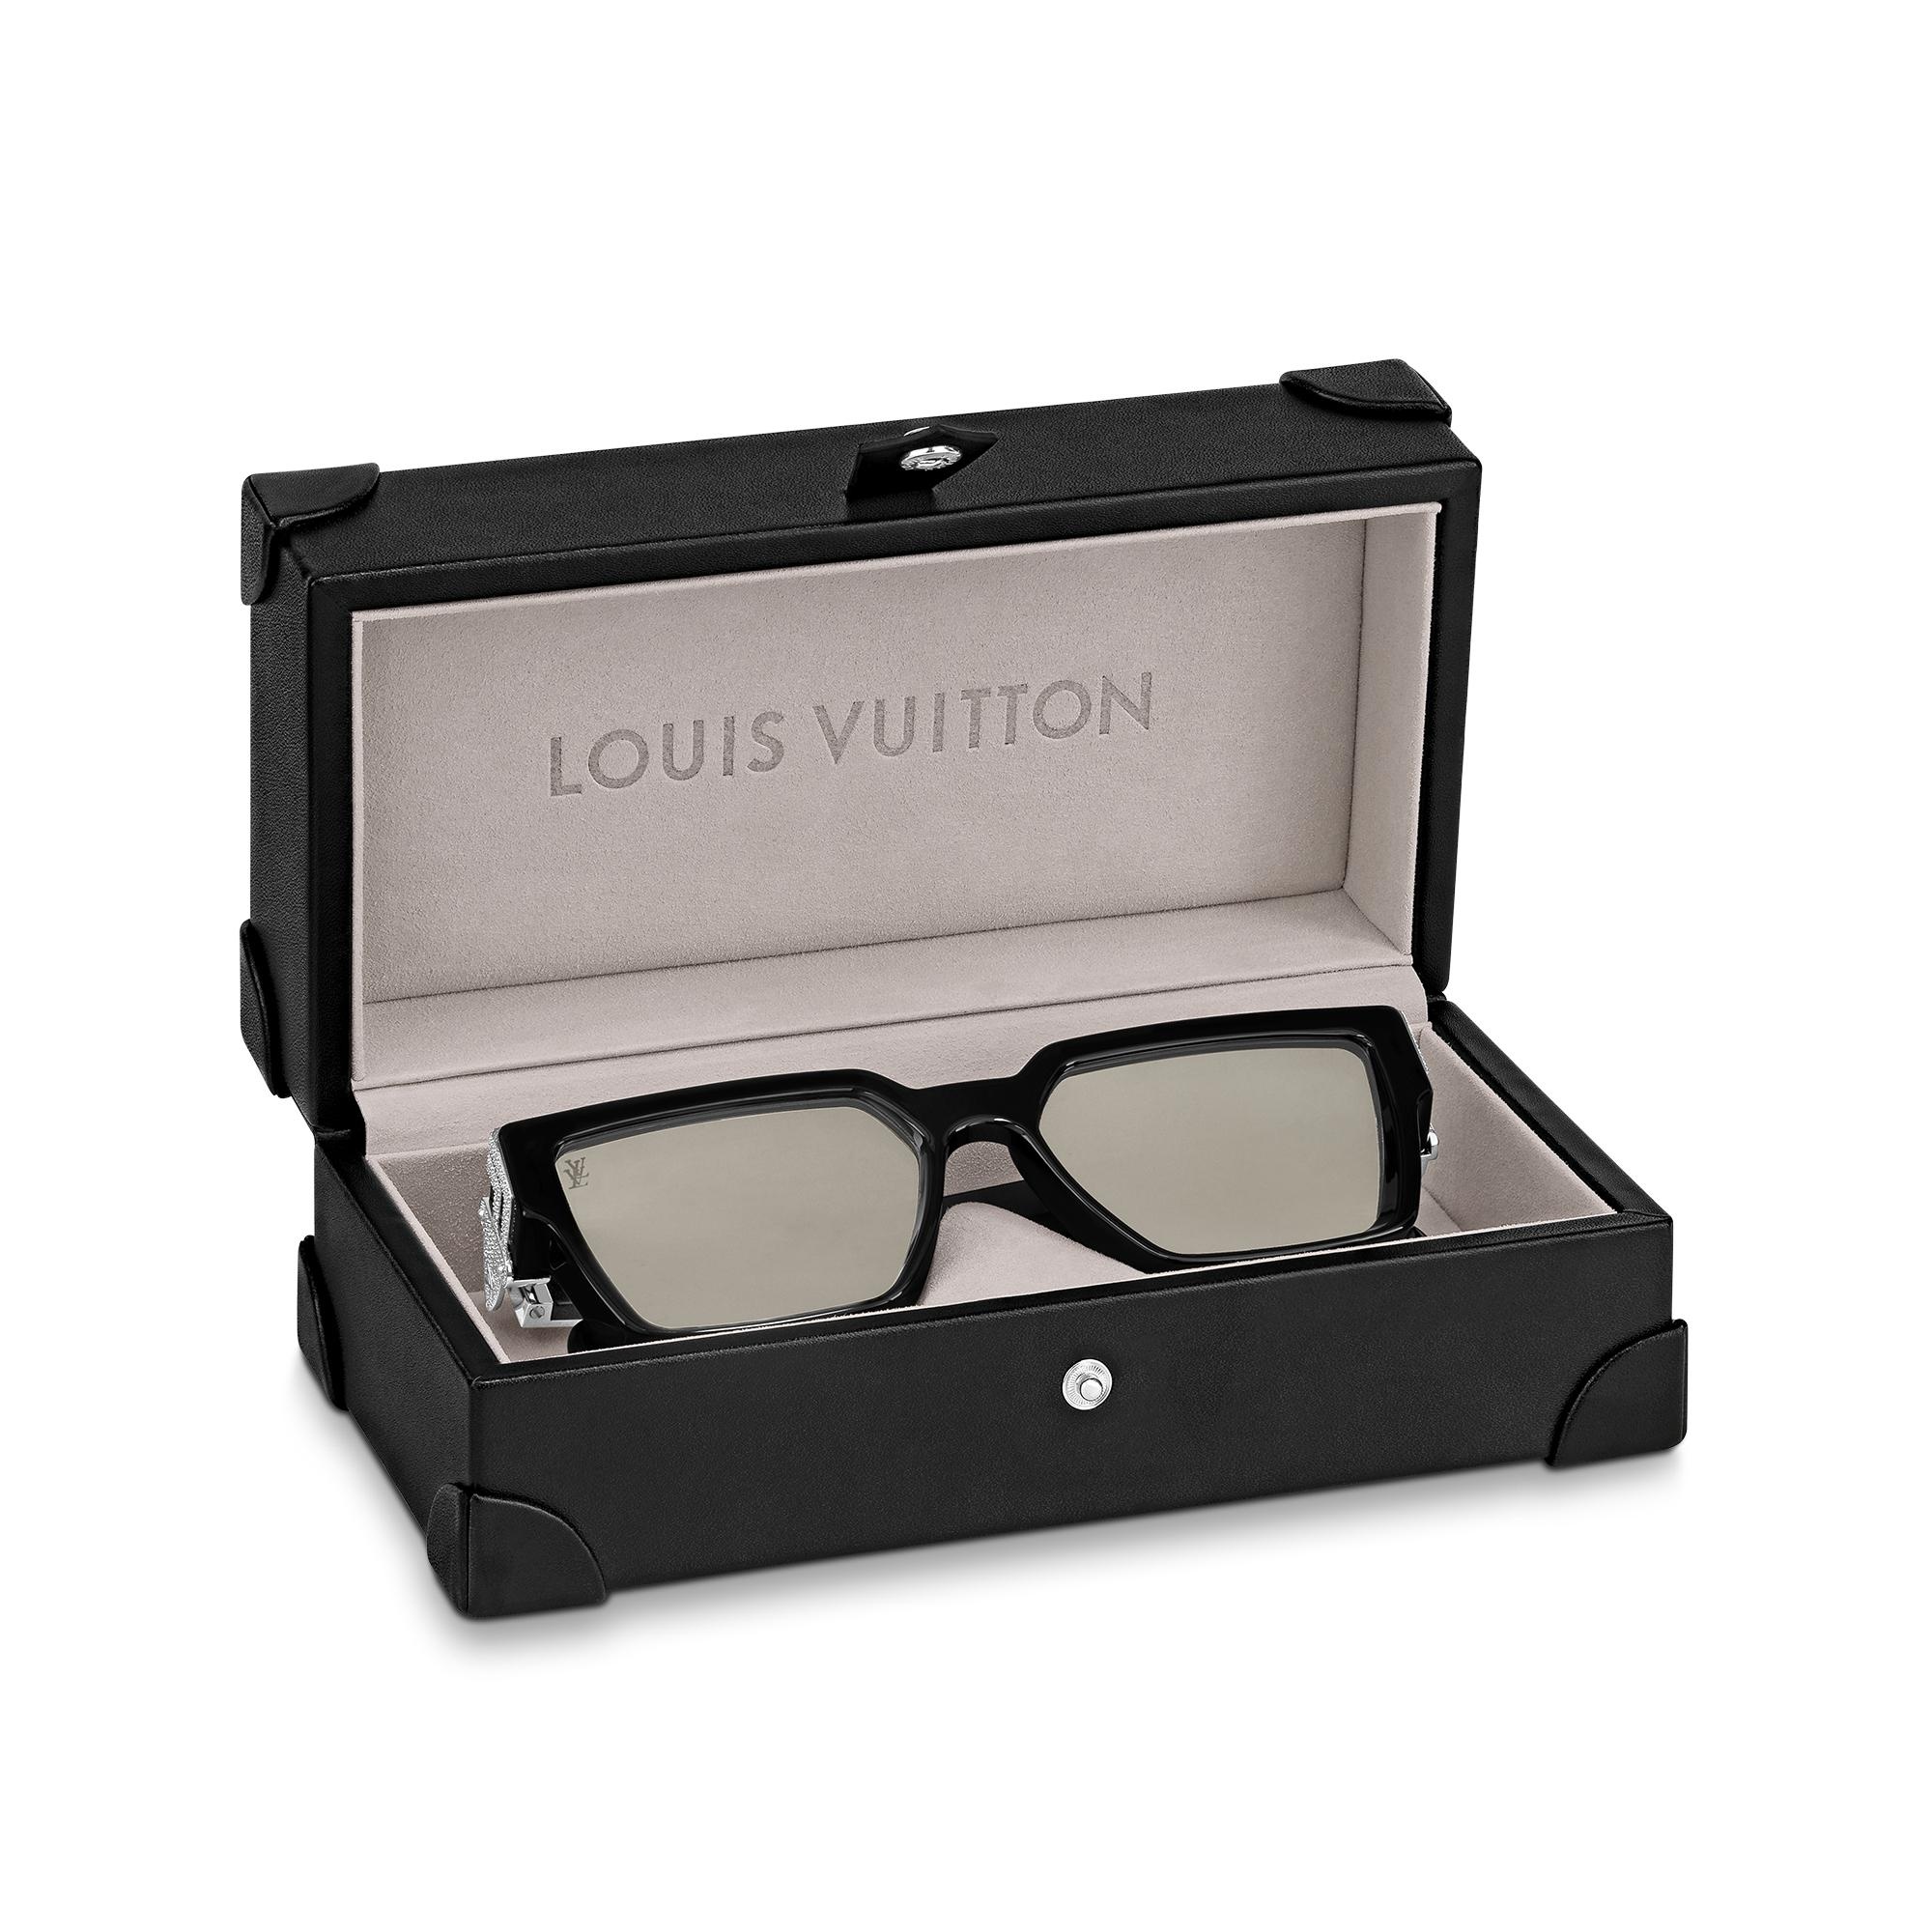 Louis Vuitton LV Glide Round Sunglasses Black Acetate. Size E